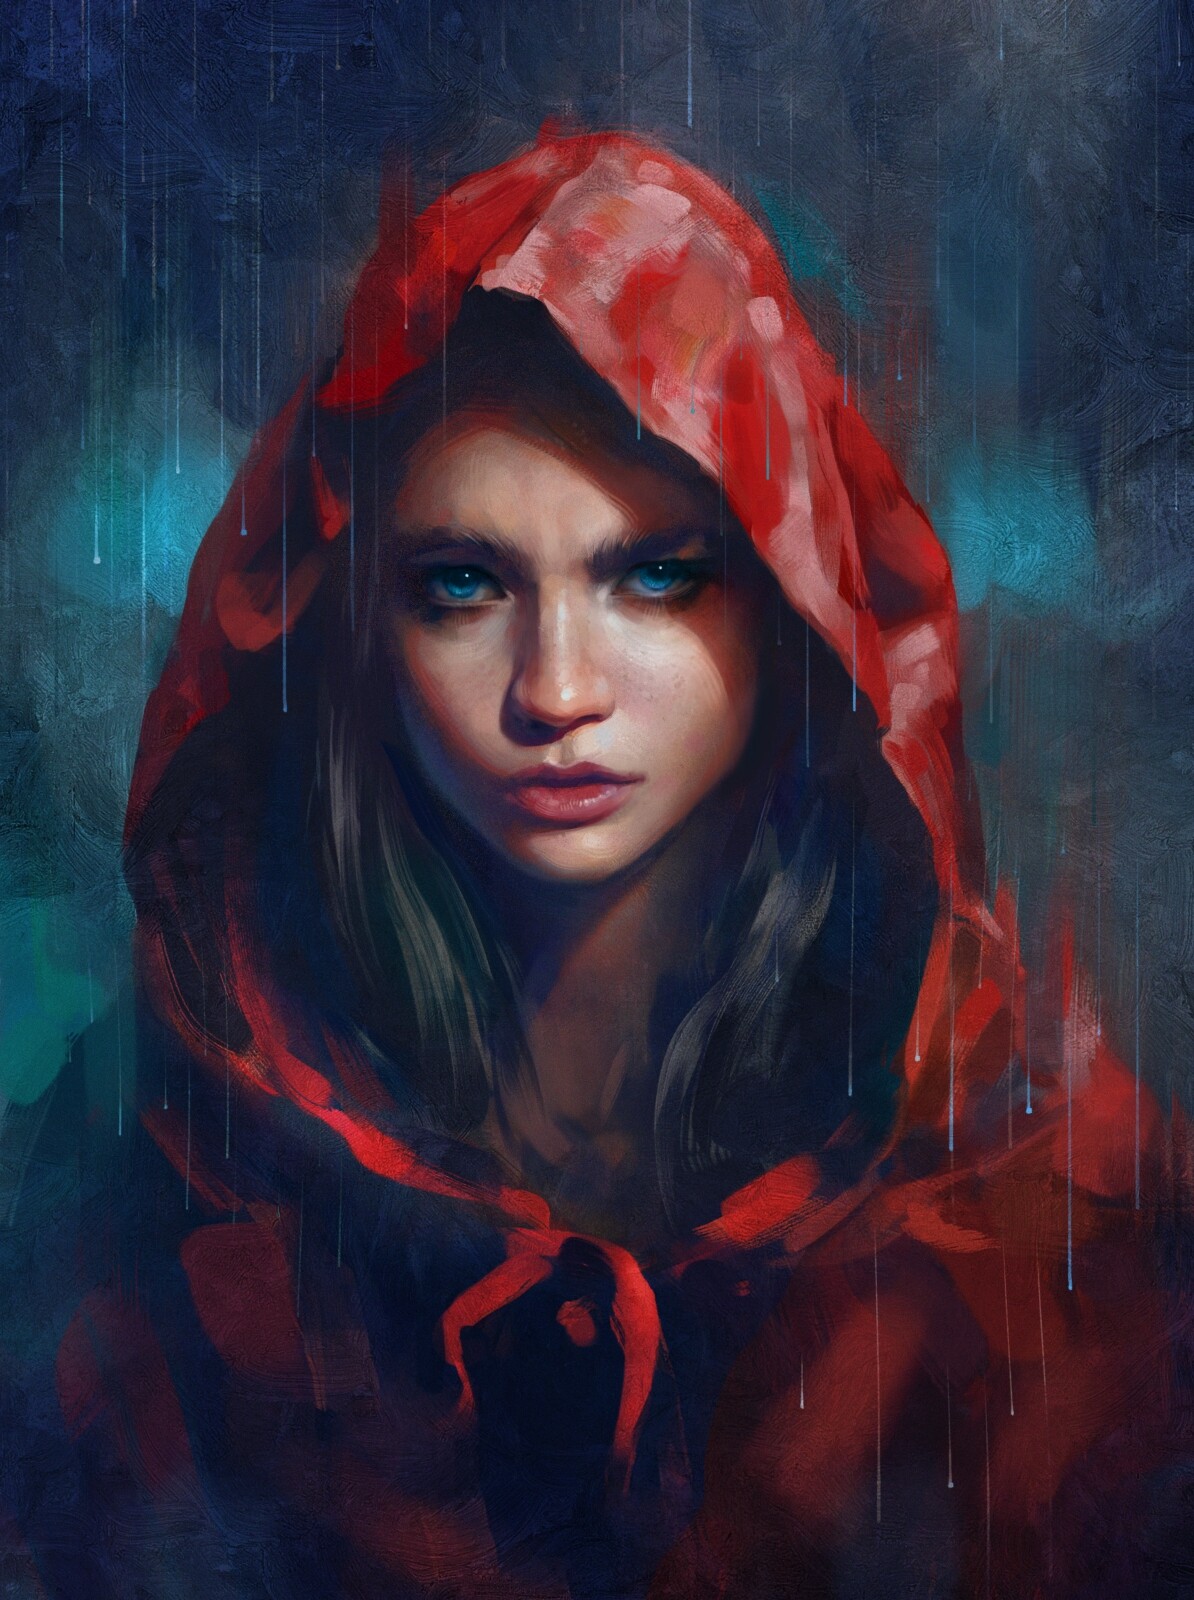 ArtStation - Red Riding Hood